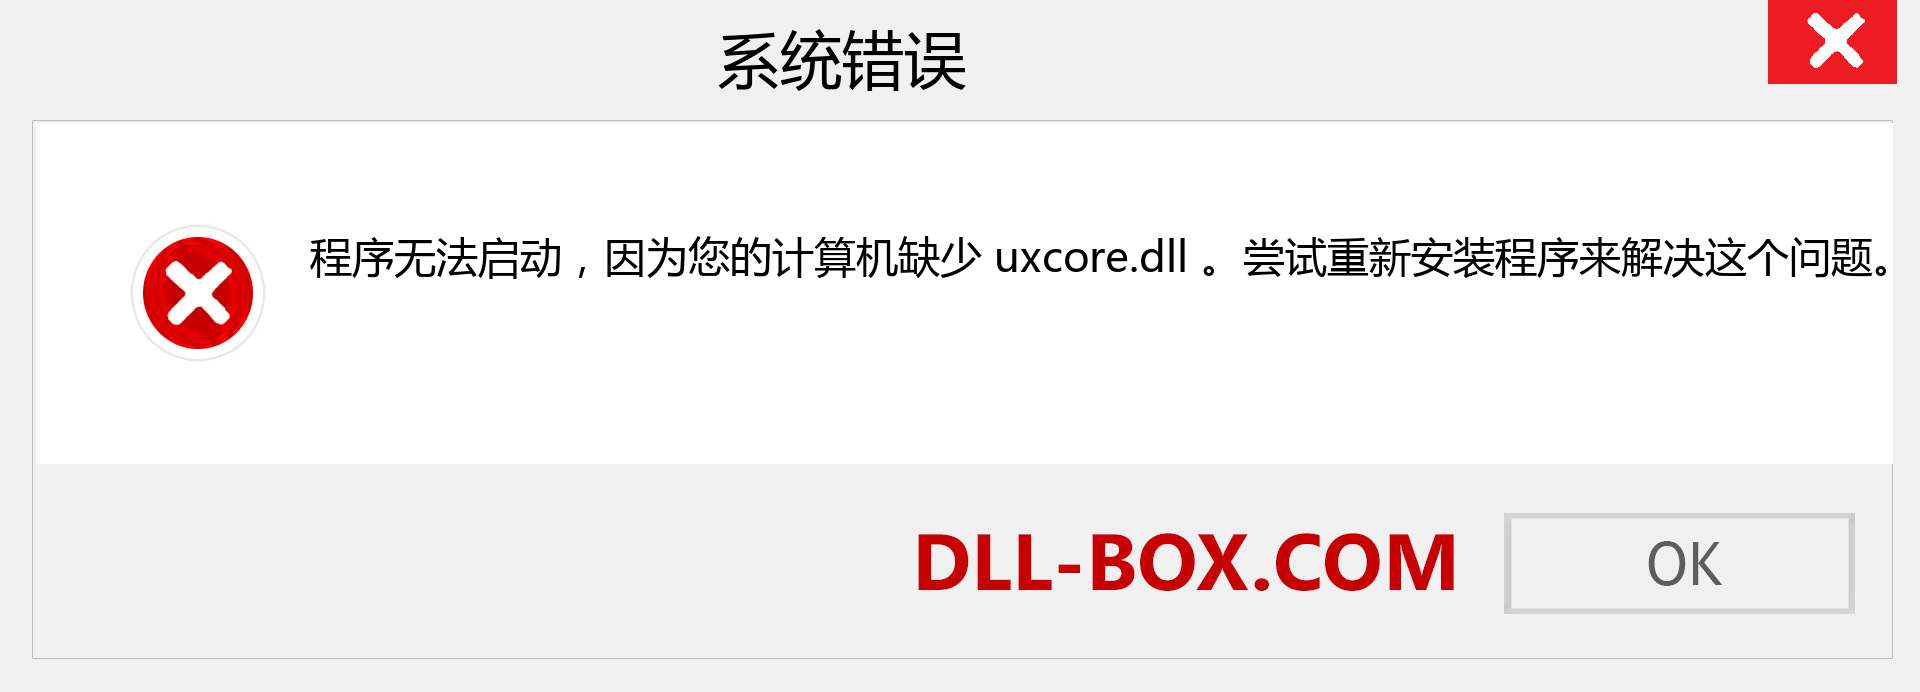 uxcore.dll 文件丢失？。 适用于 Windows 7、8、10 的下载 - 修复 Windows、照片、图像上的 uxcore dll 丢失错误